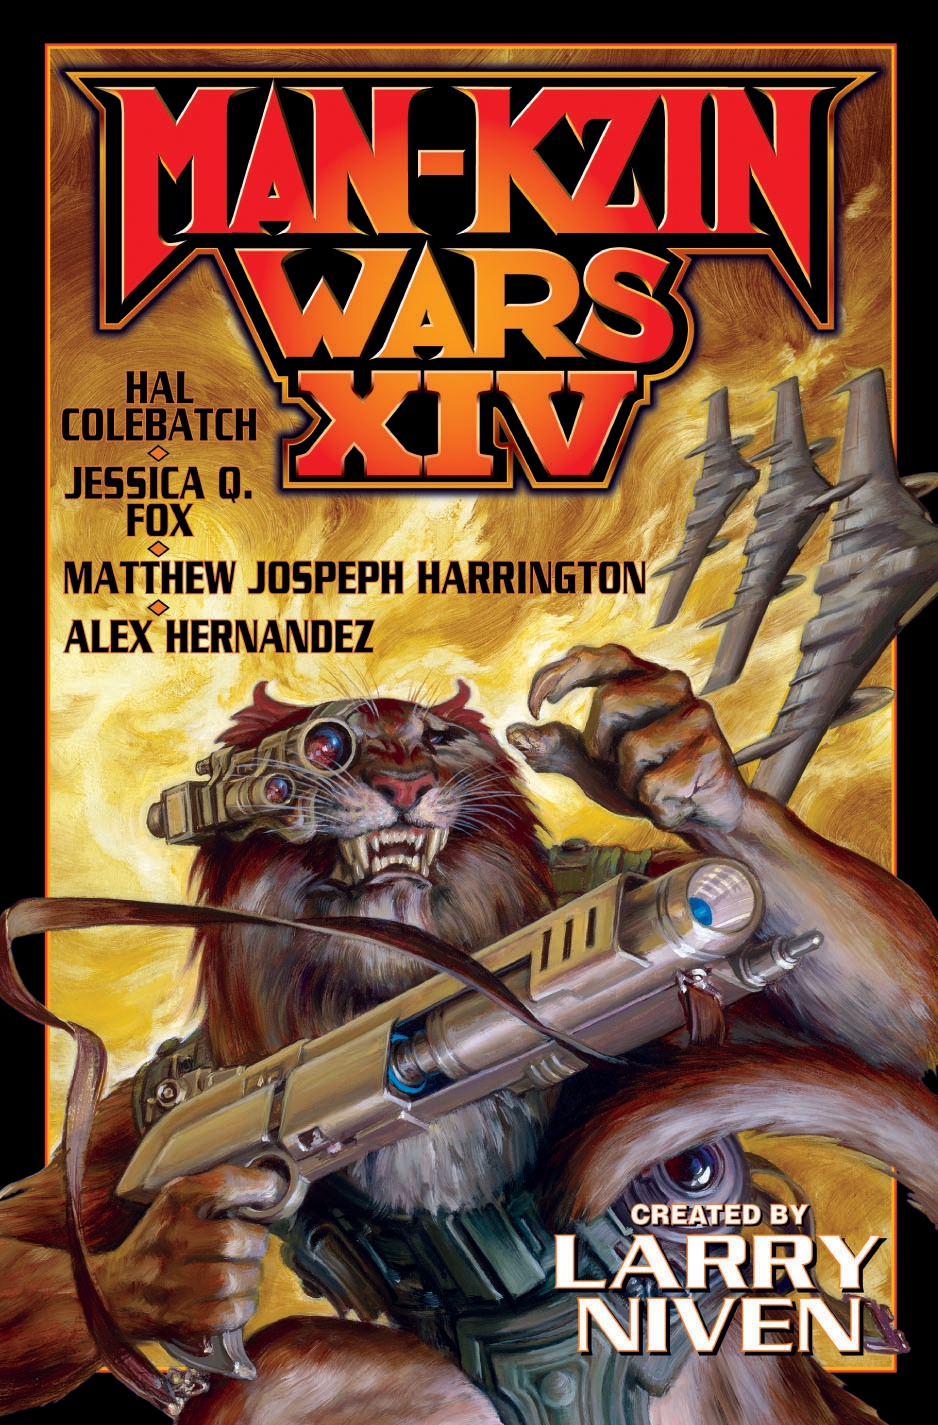 Man-Kzin Wars XIV by Larry Niven